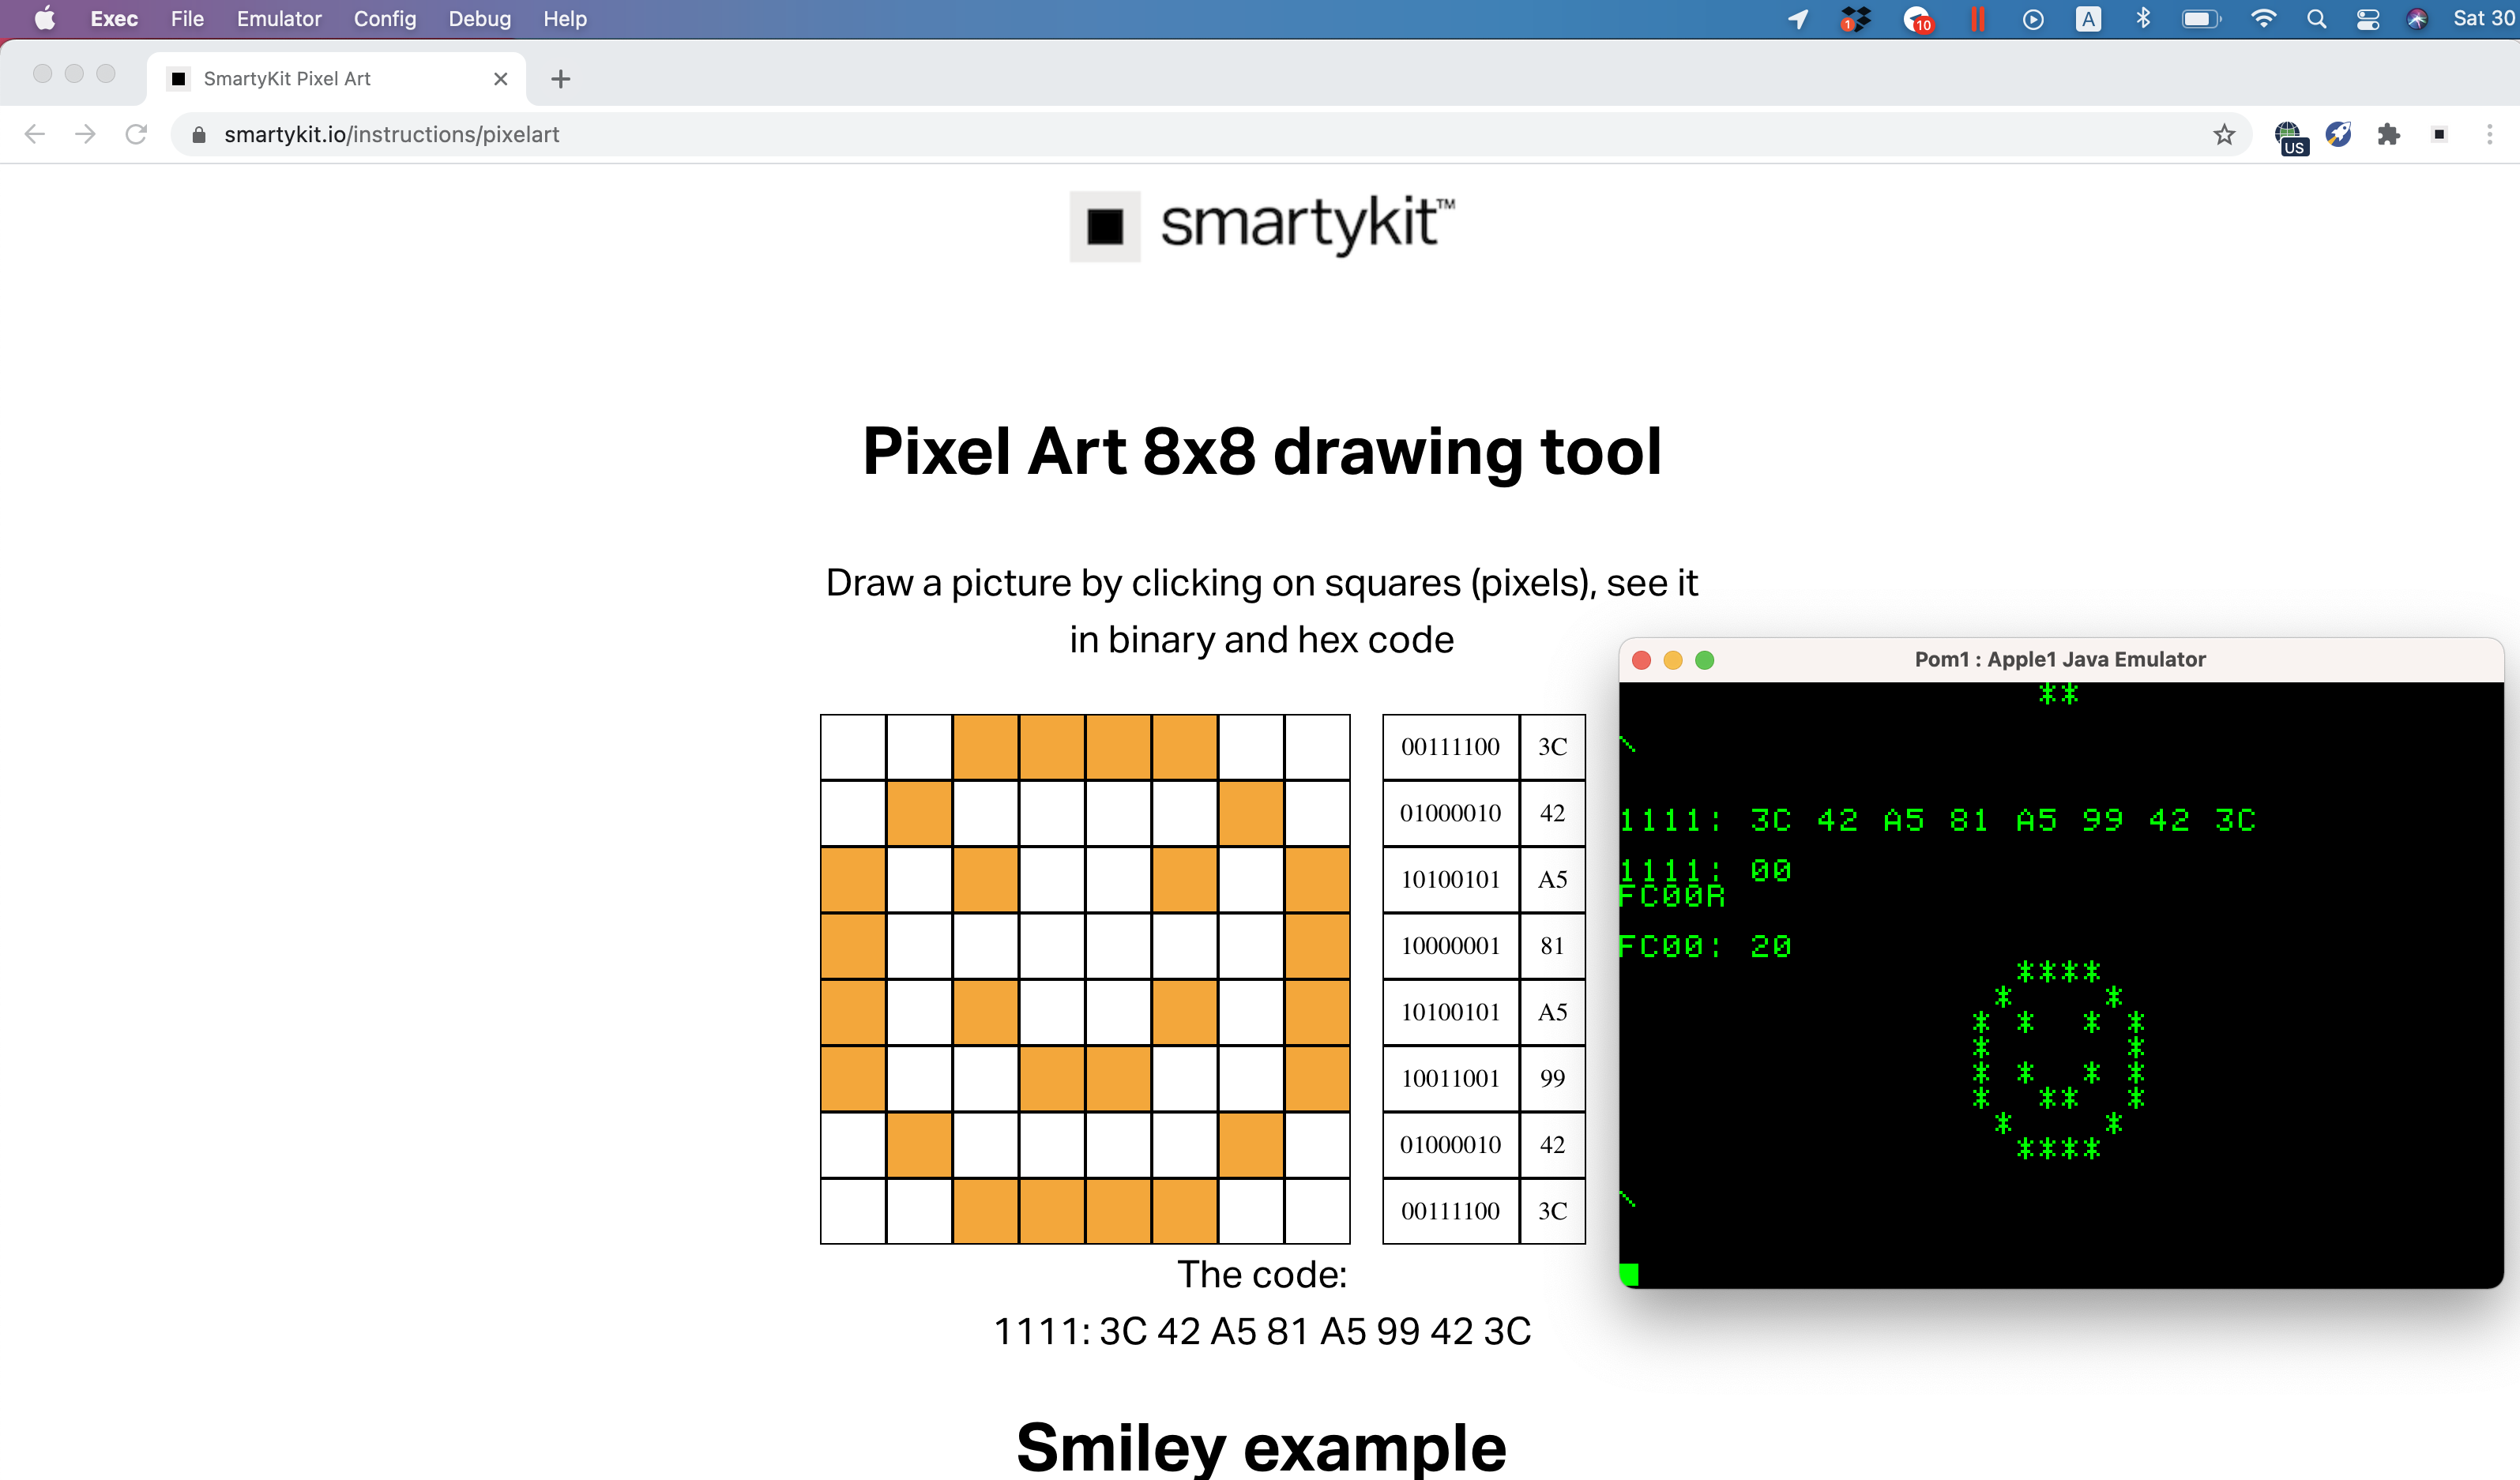 SmartyKit 8x8 Pixel Art online tool